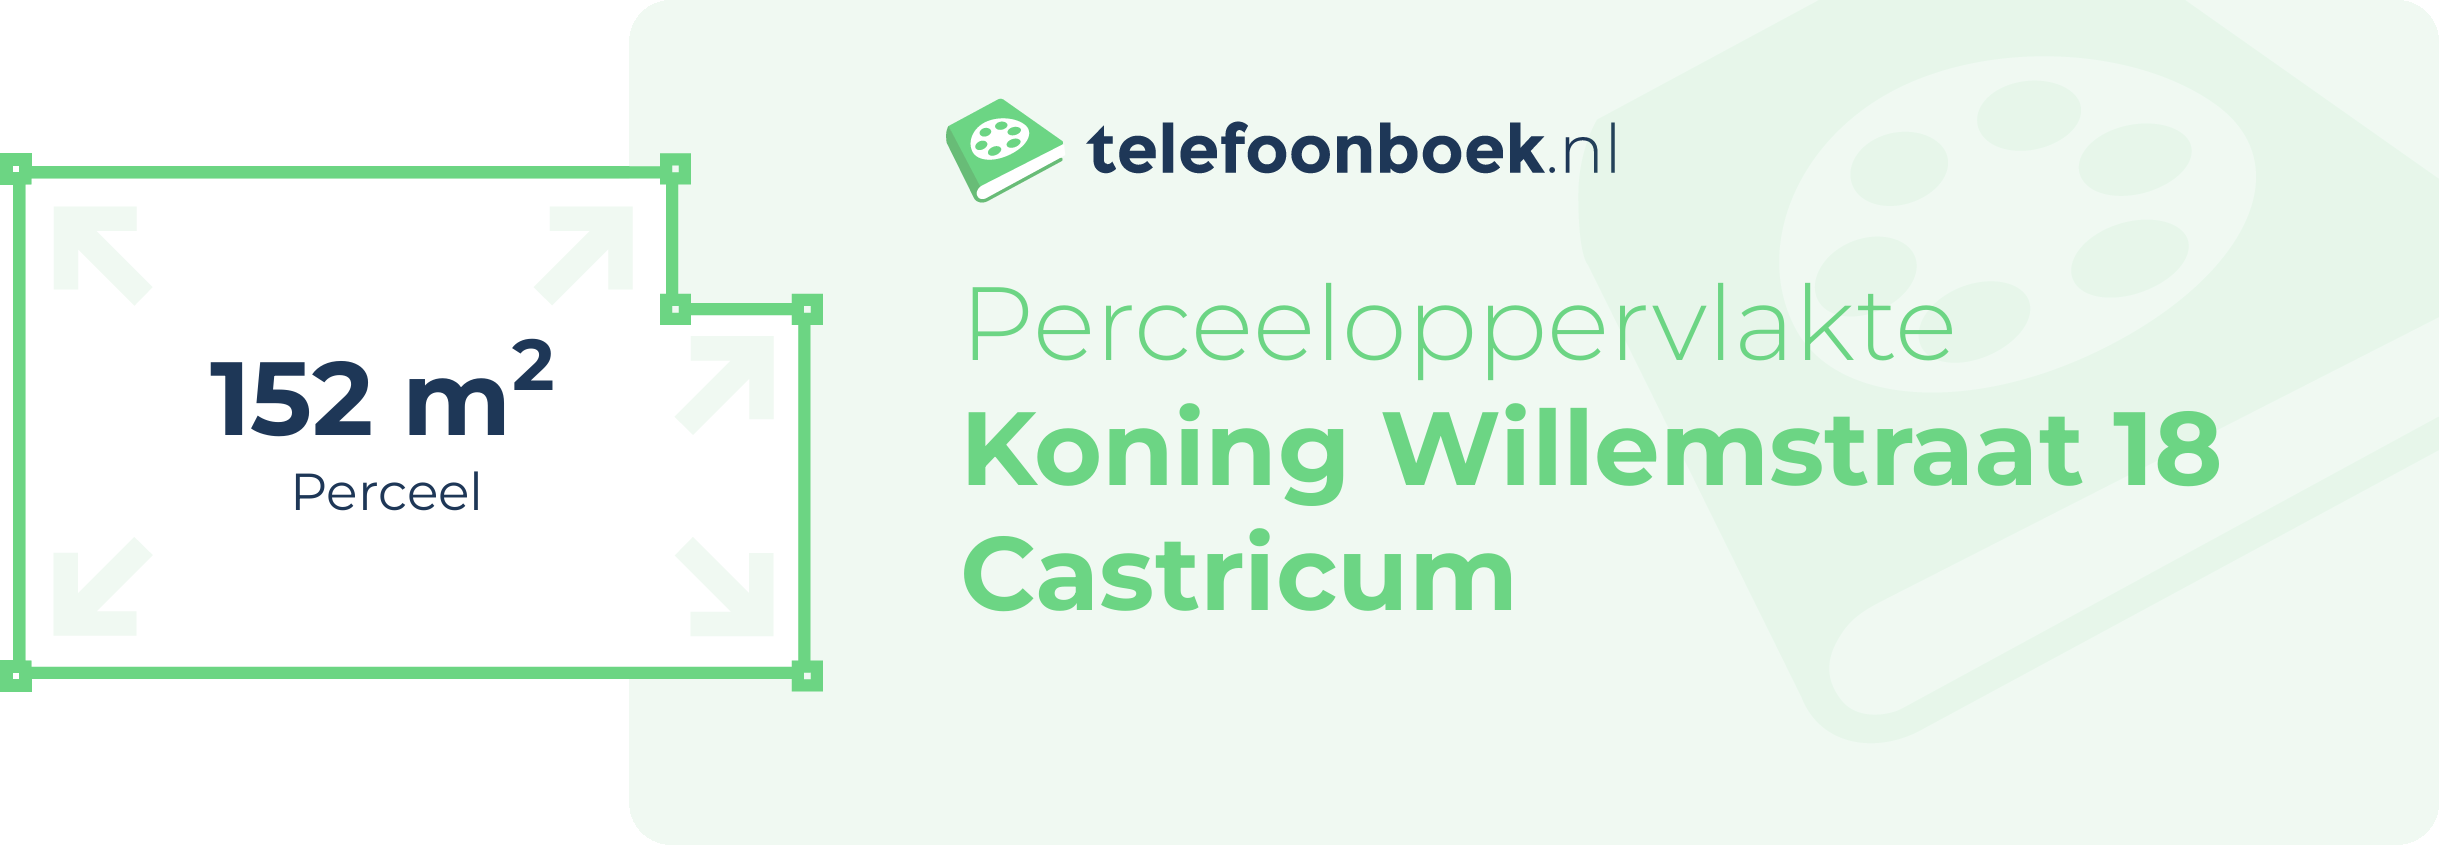 Perceeloppervlakte Koning Willemstraat 18 Castricum